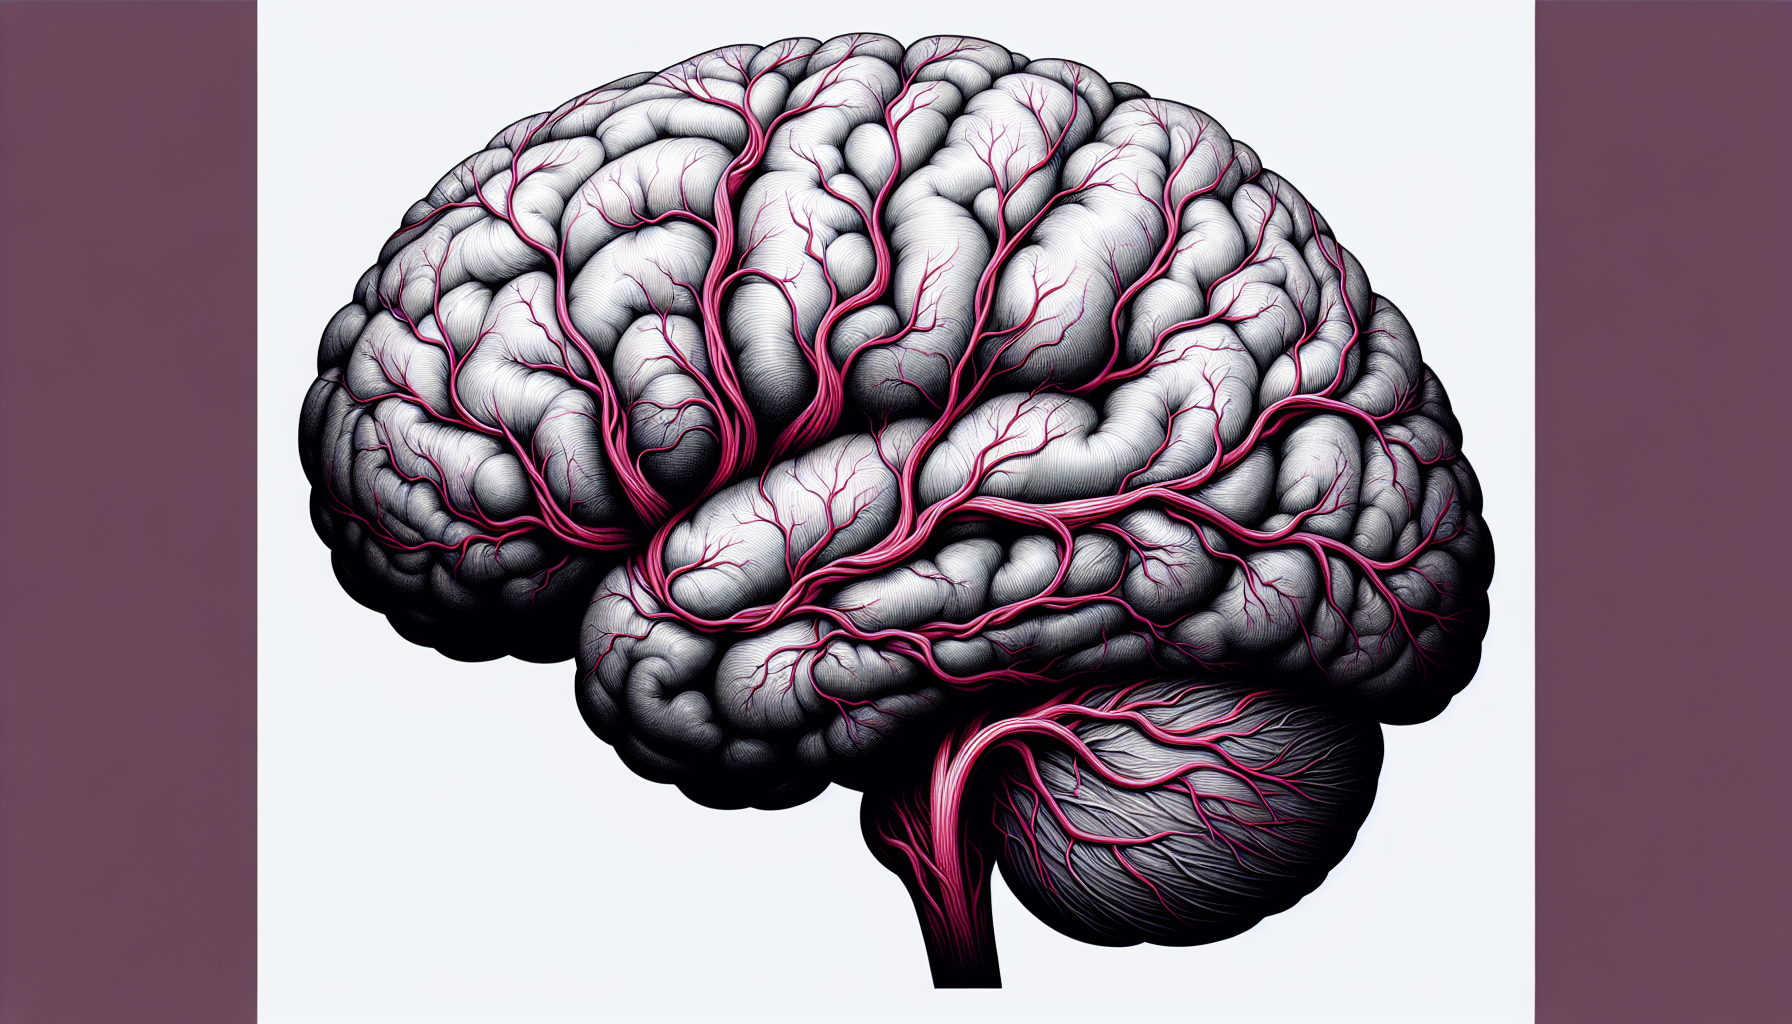 Ilustración de un cerebro con flujo sanguíneo disminuido, representando la isquemia cerebral